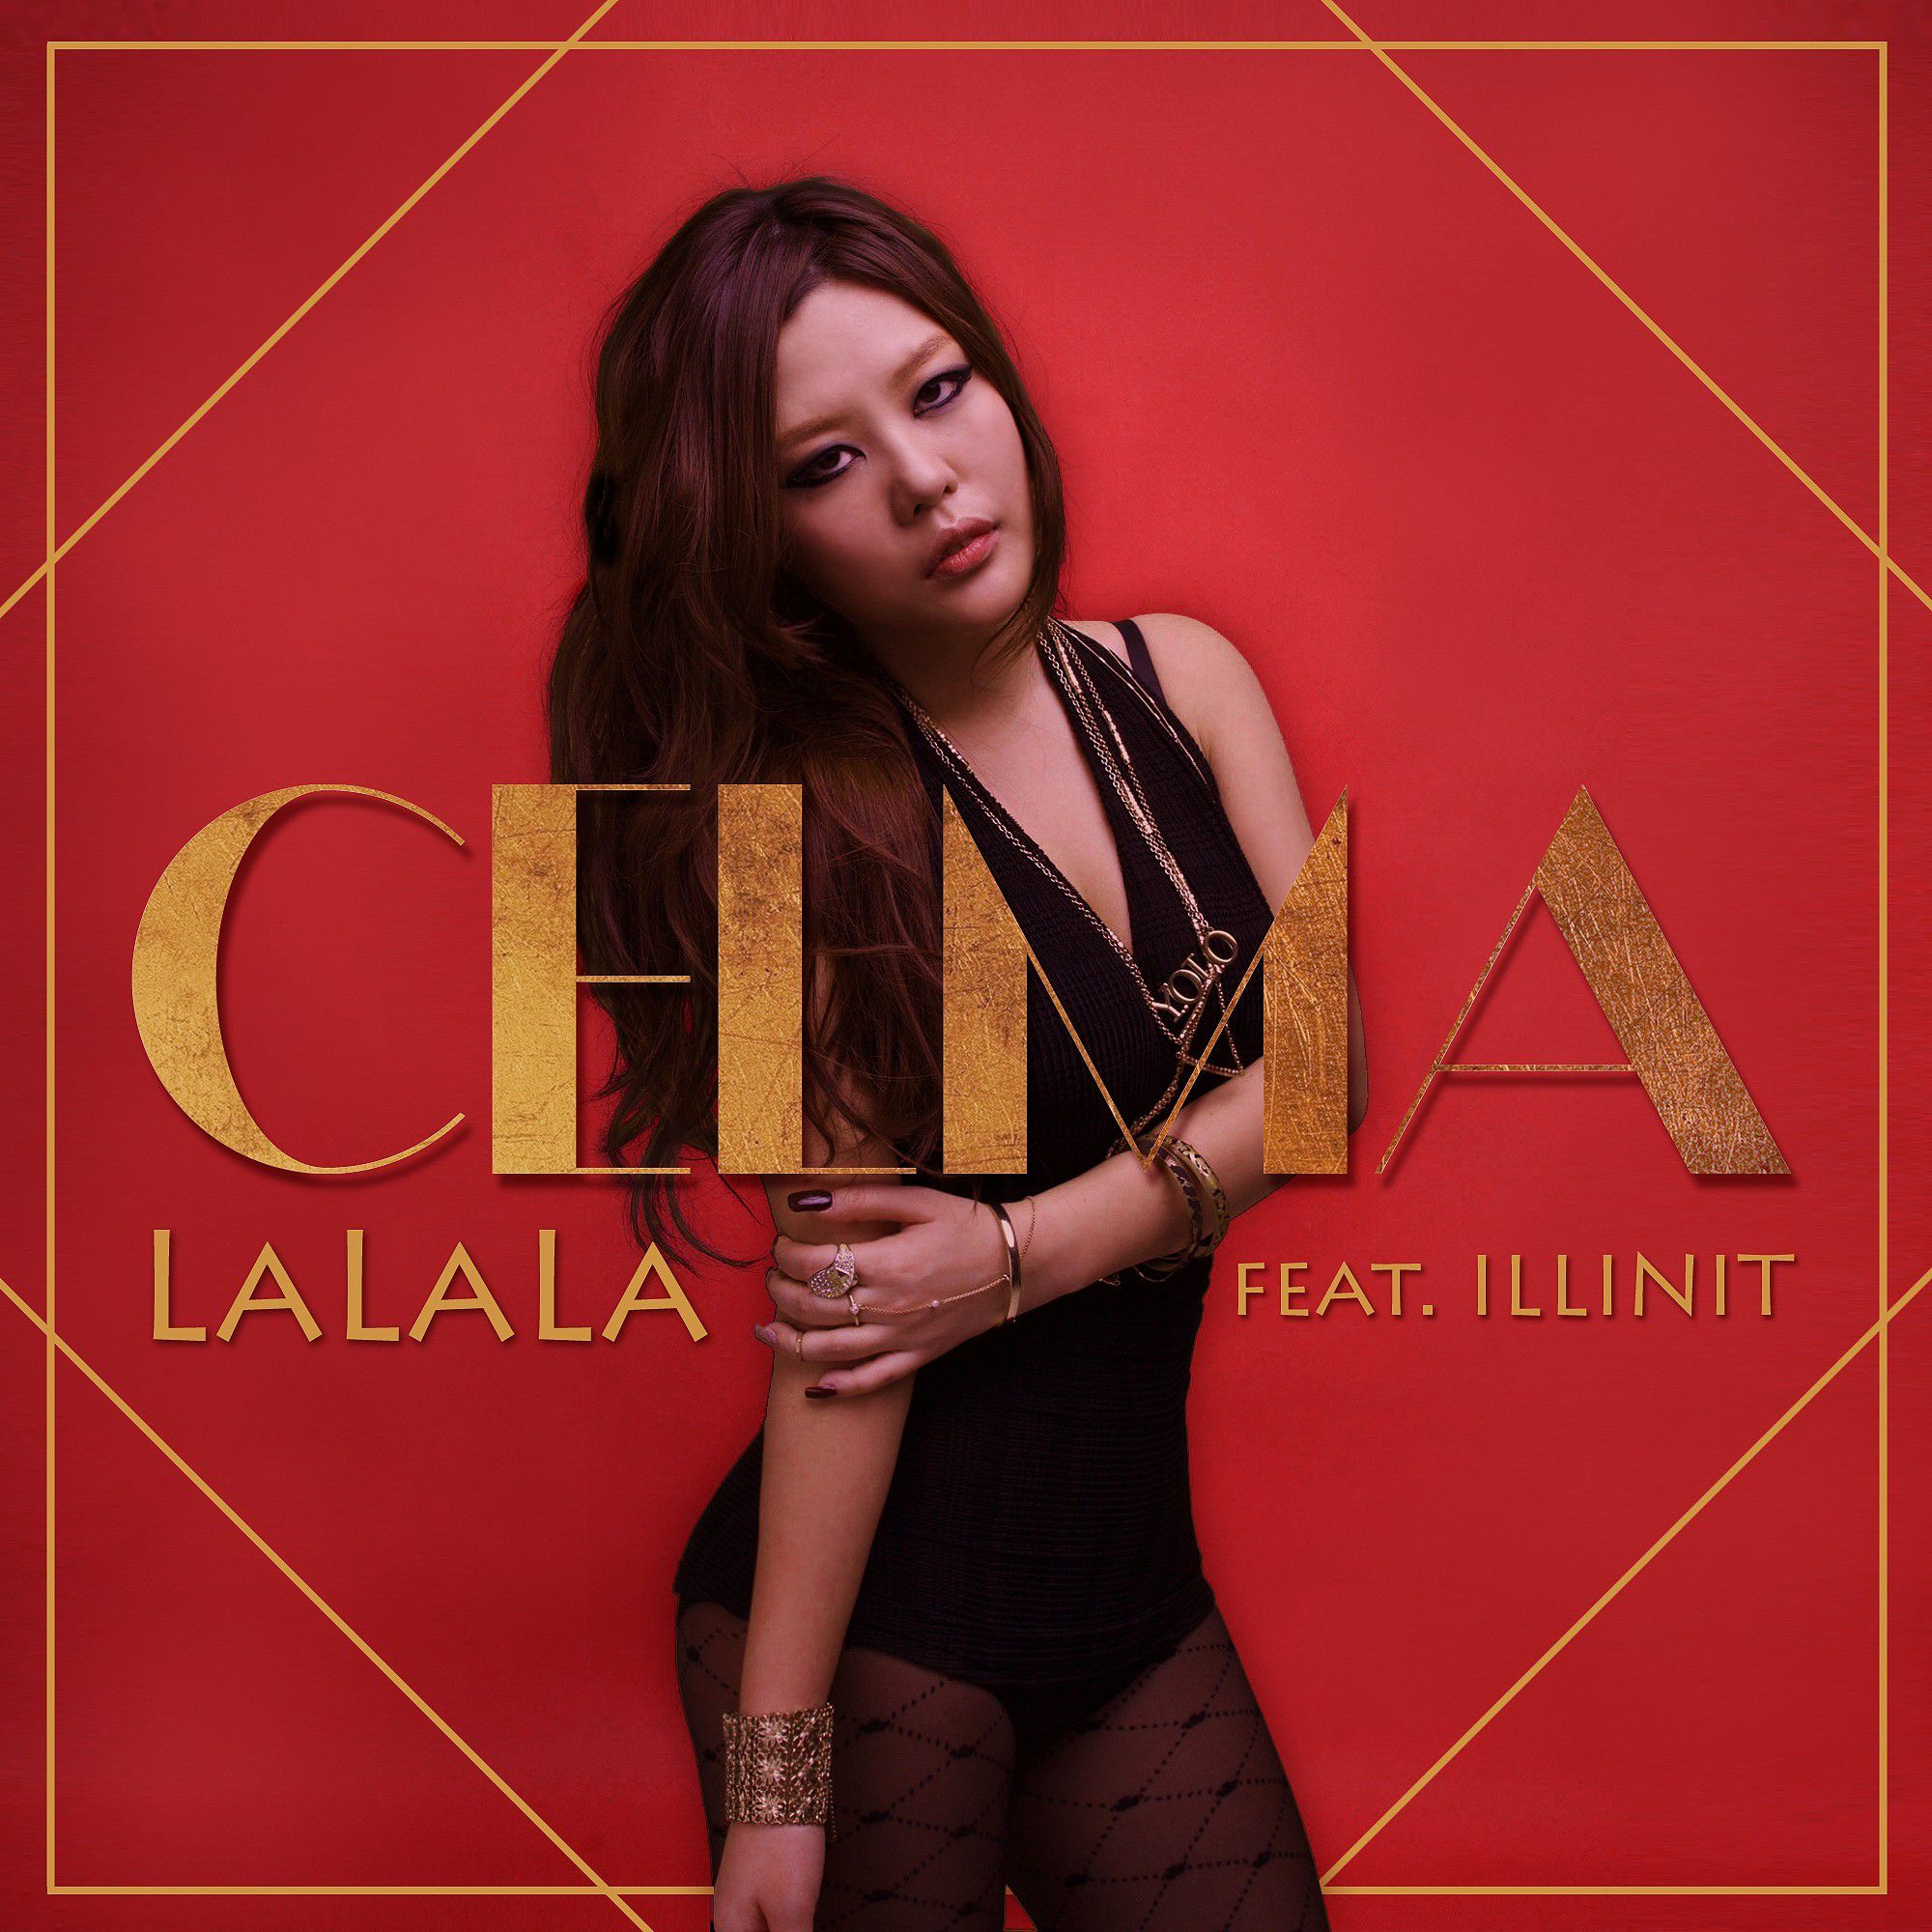 LALALA (feat. illinit)